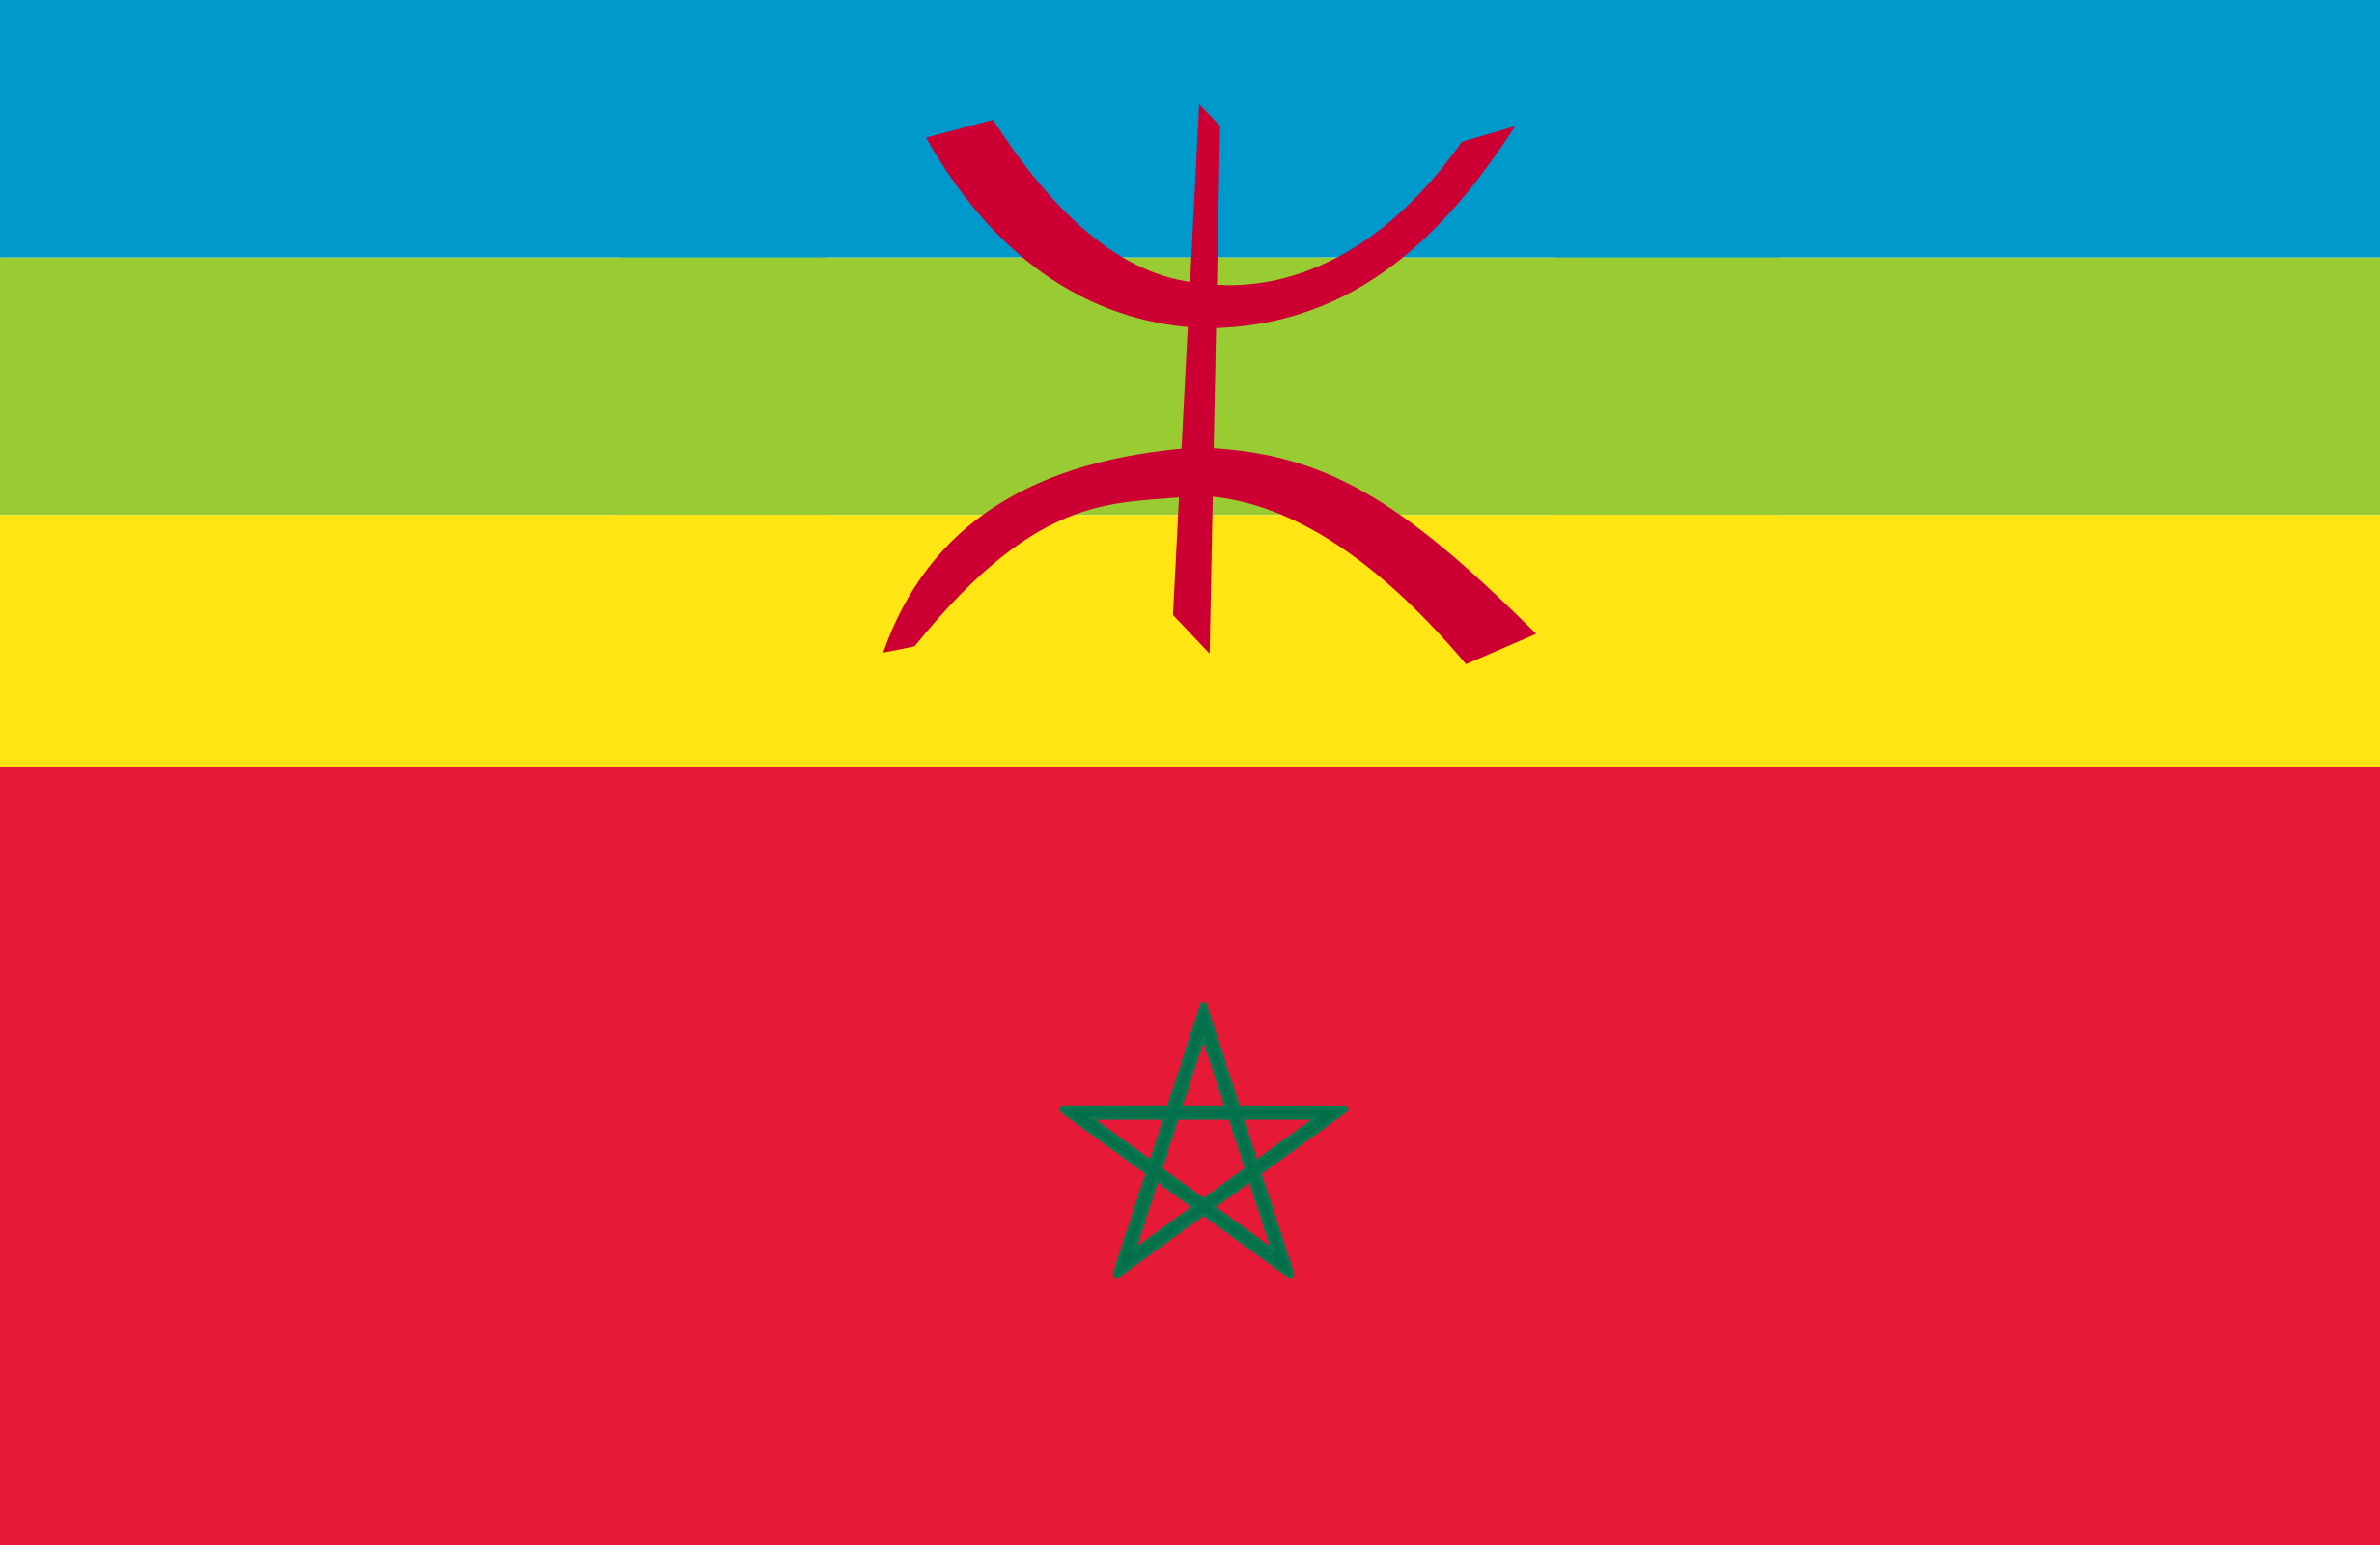 File:Drapeau ethnique berbere sur drapeau du maroc.png - Wikimedia Commons